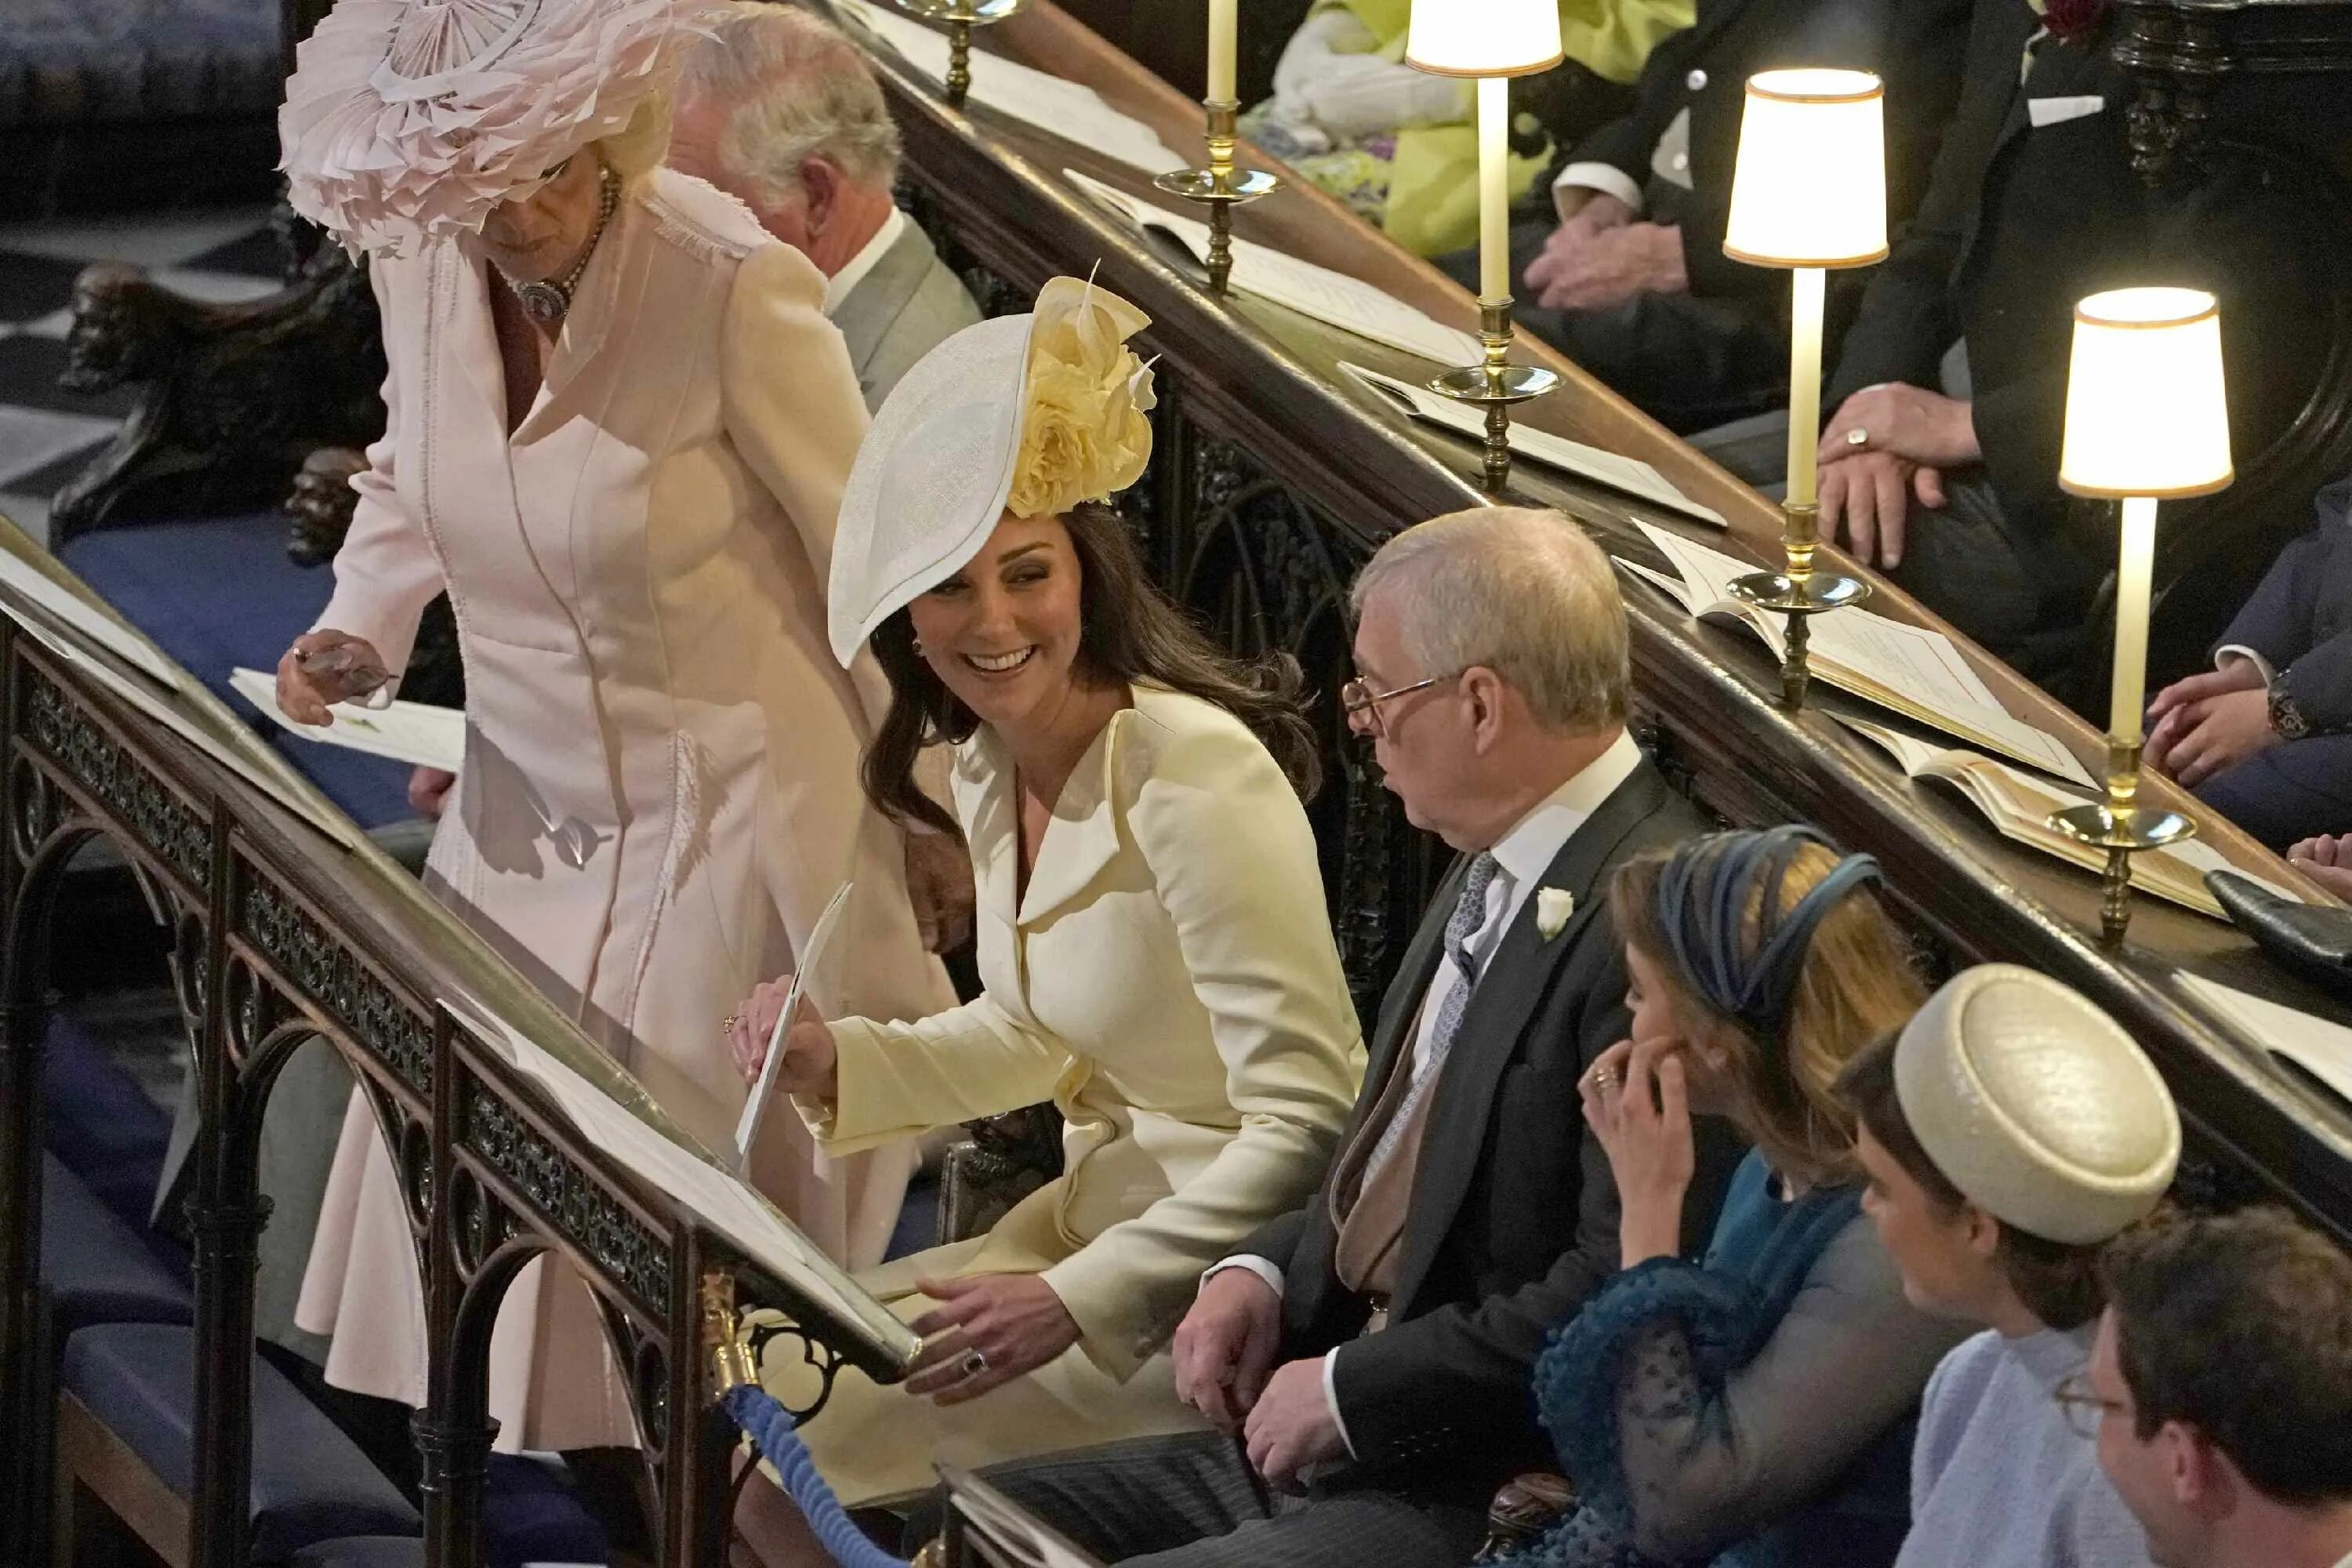 Реверанс Королеве на свадьбе Кейт Миддлтон. Реверанс Кейт Миддлтон на свадьбе. Реверанс Кейт Миддлтон перед королевой на свадьбе. Про английскую принцессу